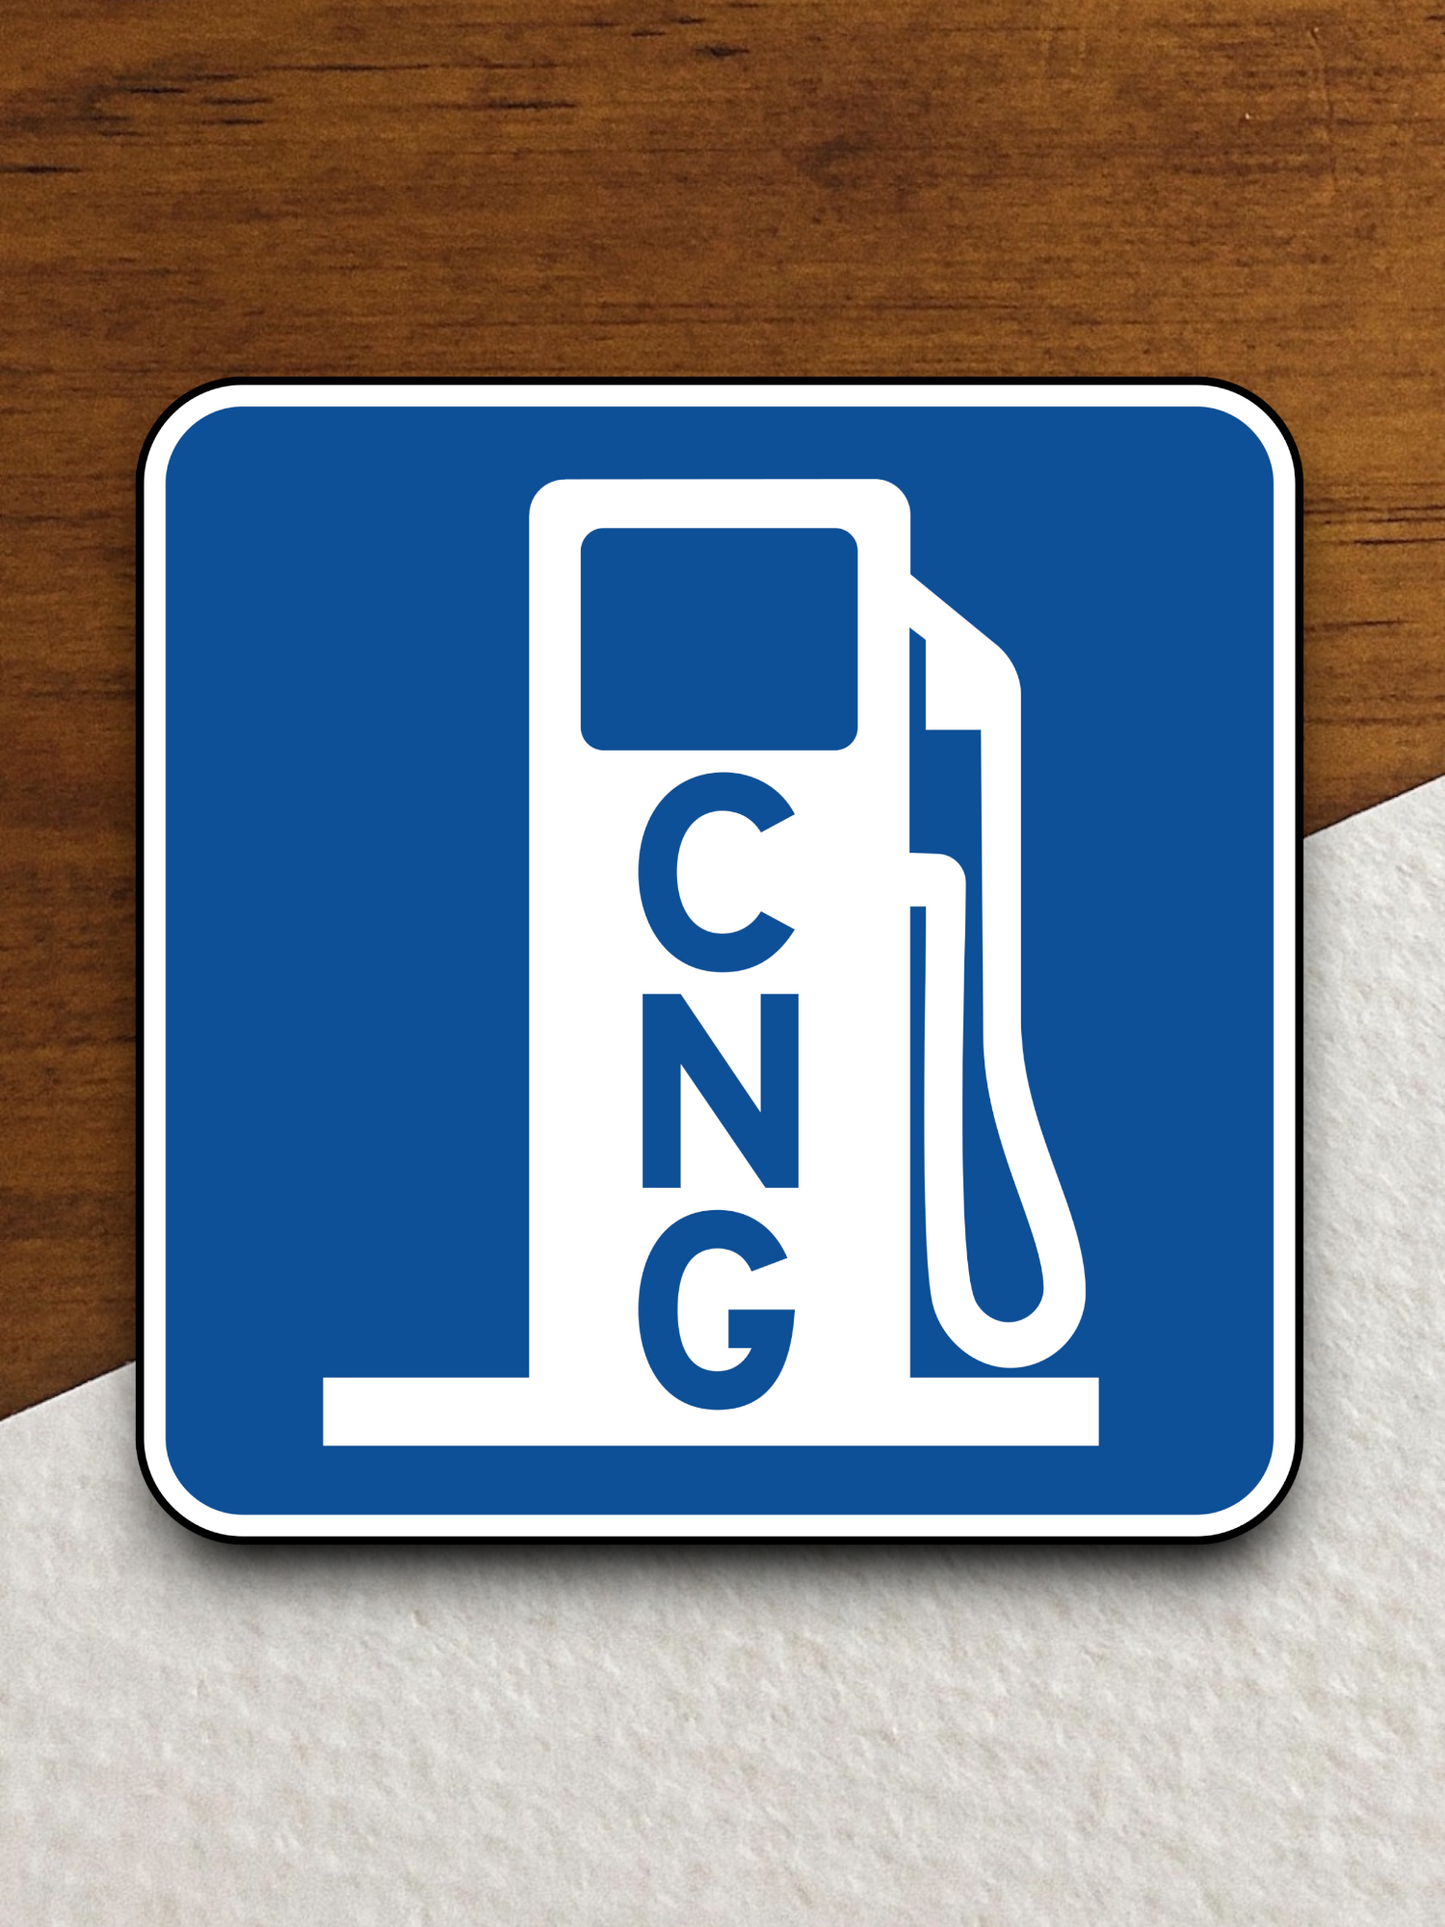 Alternative fuel (CNG) Sticker